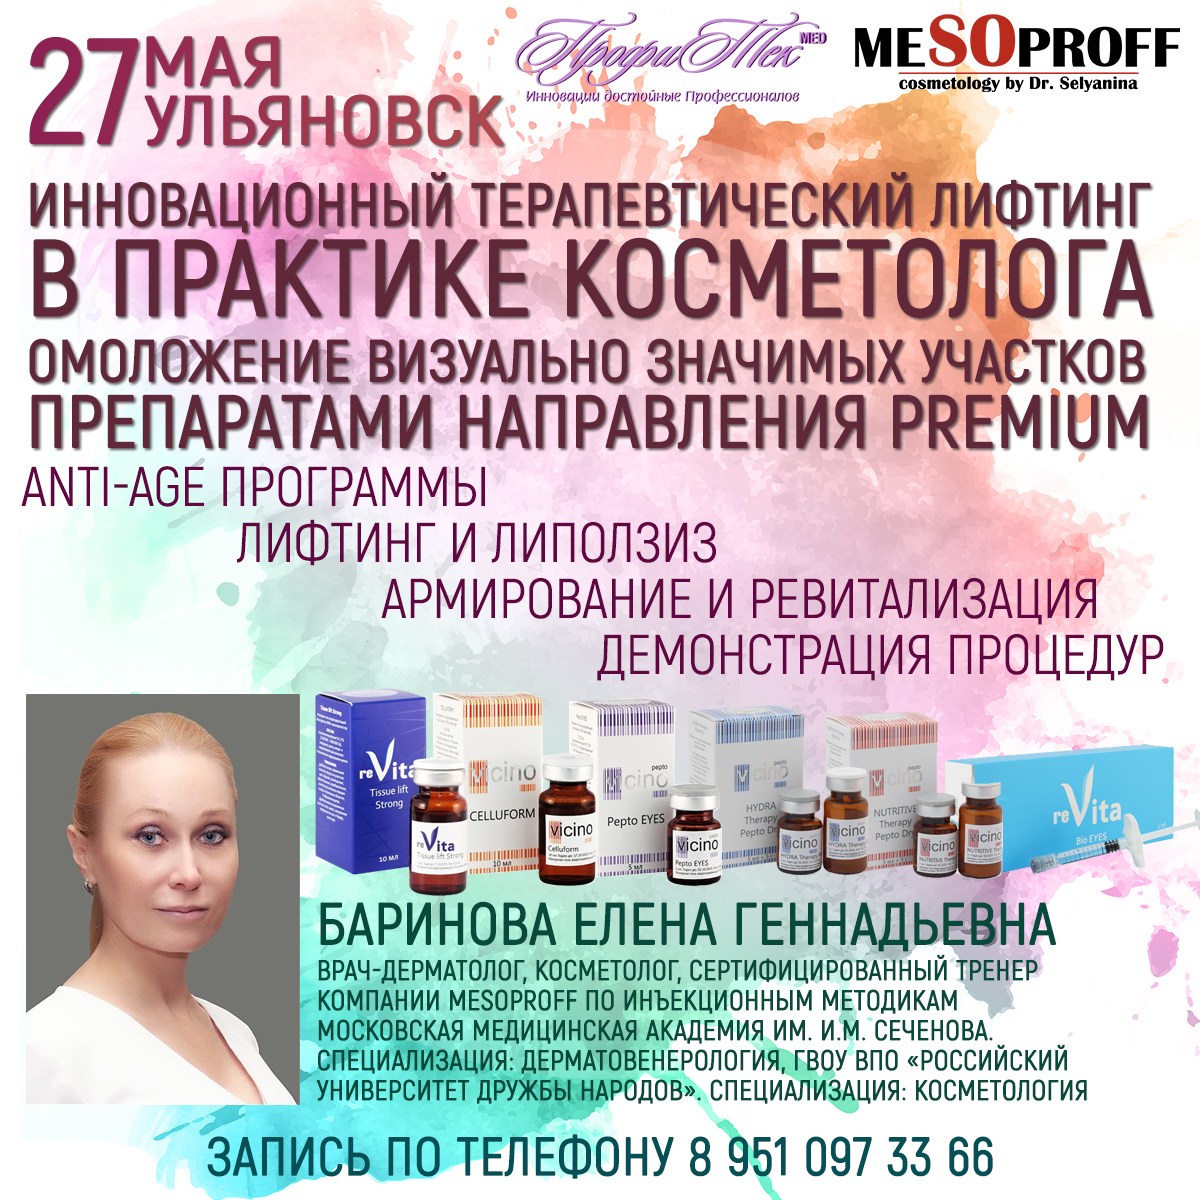 27 мая, Ульяновск, Пептиды в косметологии